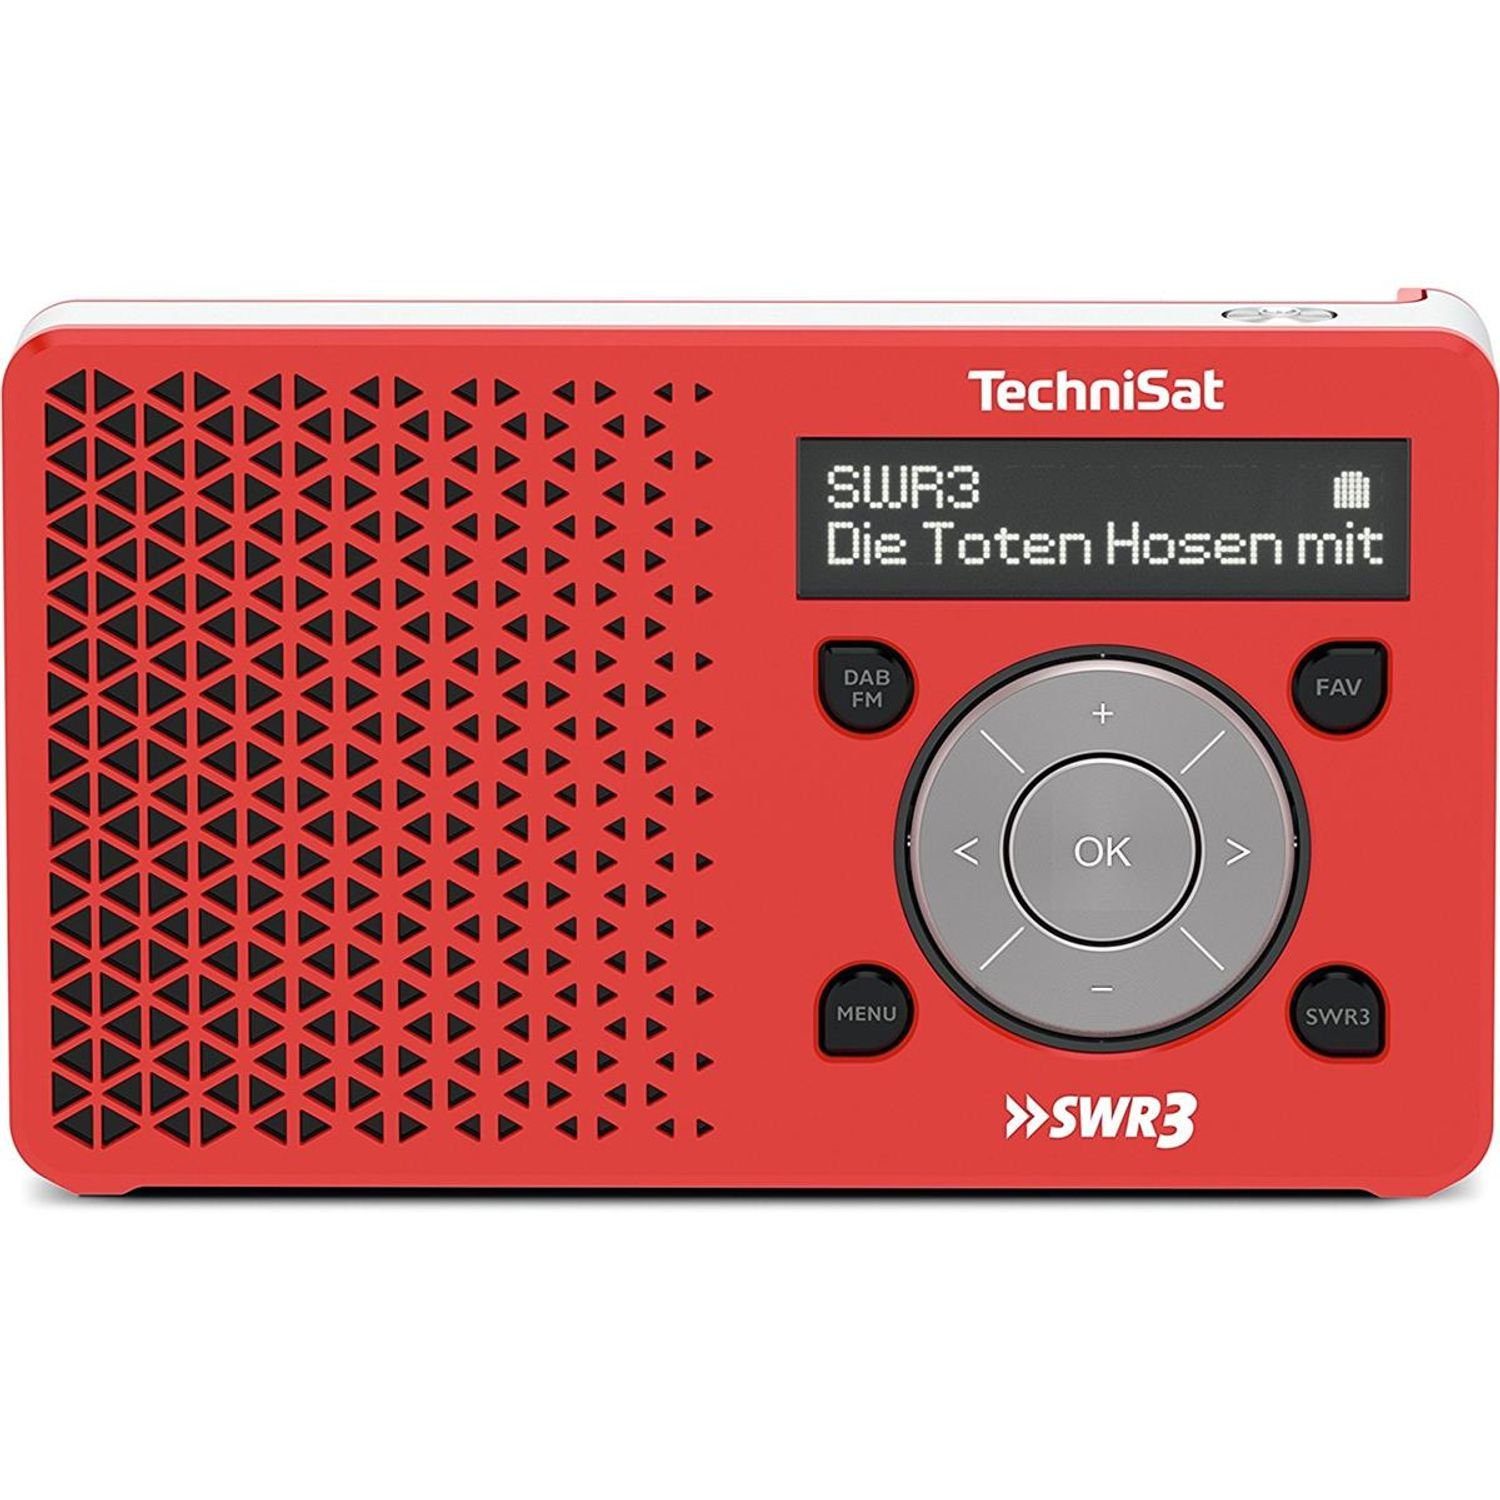 (DAB) Digitalradio 1 SWR3-Edition Digitalradio DIGITRADIO DAB+ TechniSat